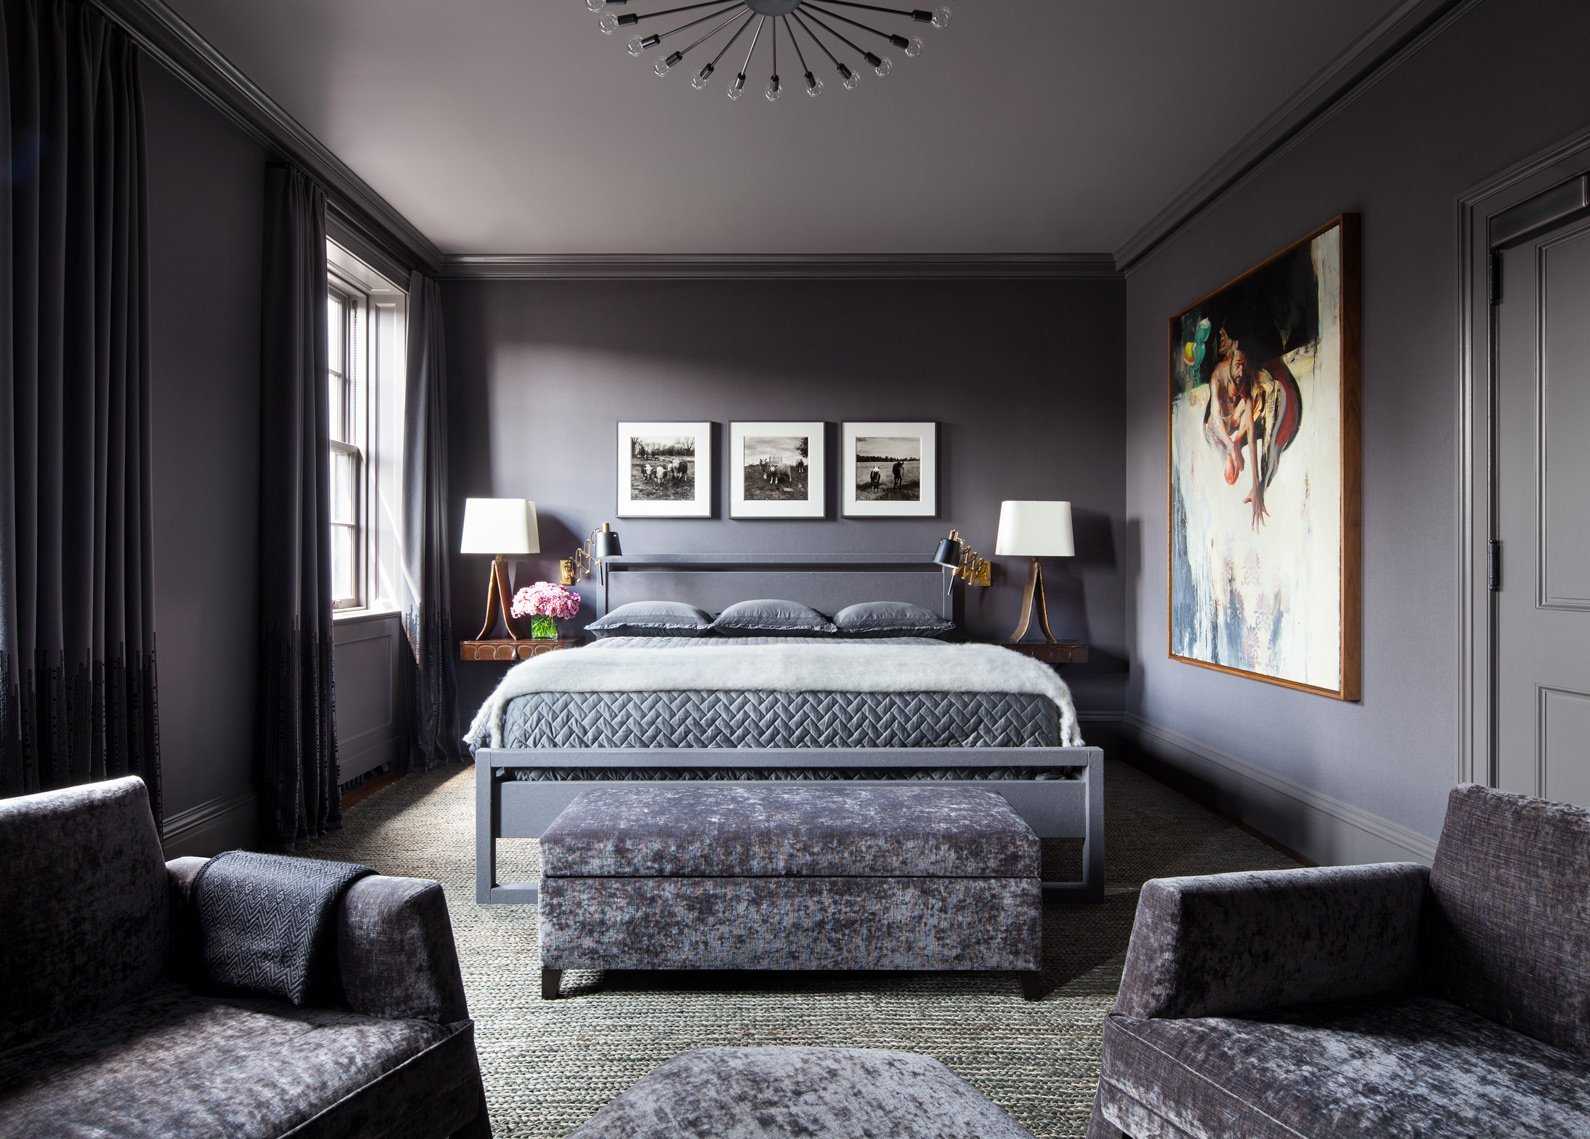 60 великолепных идей для стильного и модного оформления холостяцкой спальни – интерьеры для настоящих мужчин